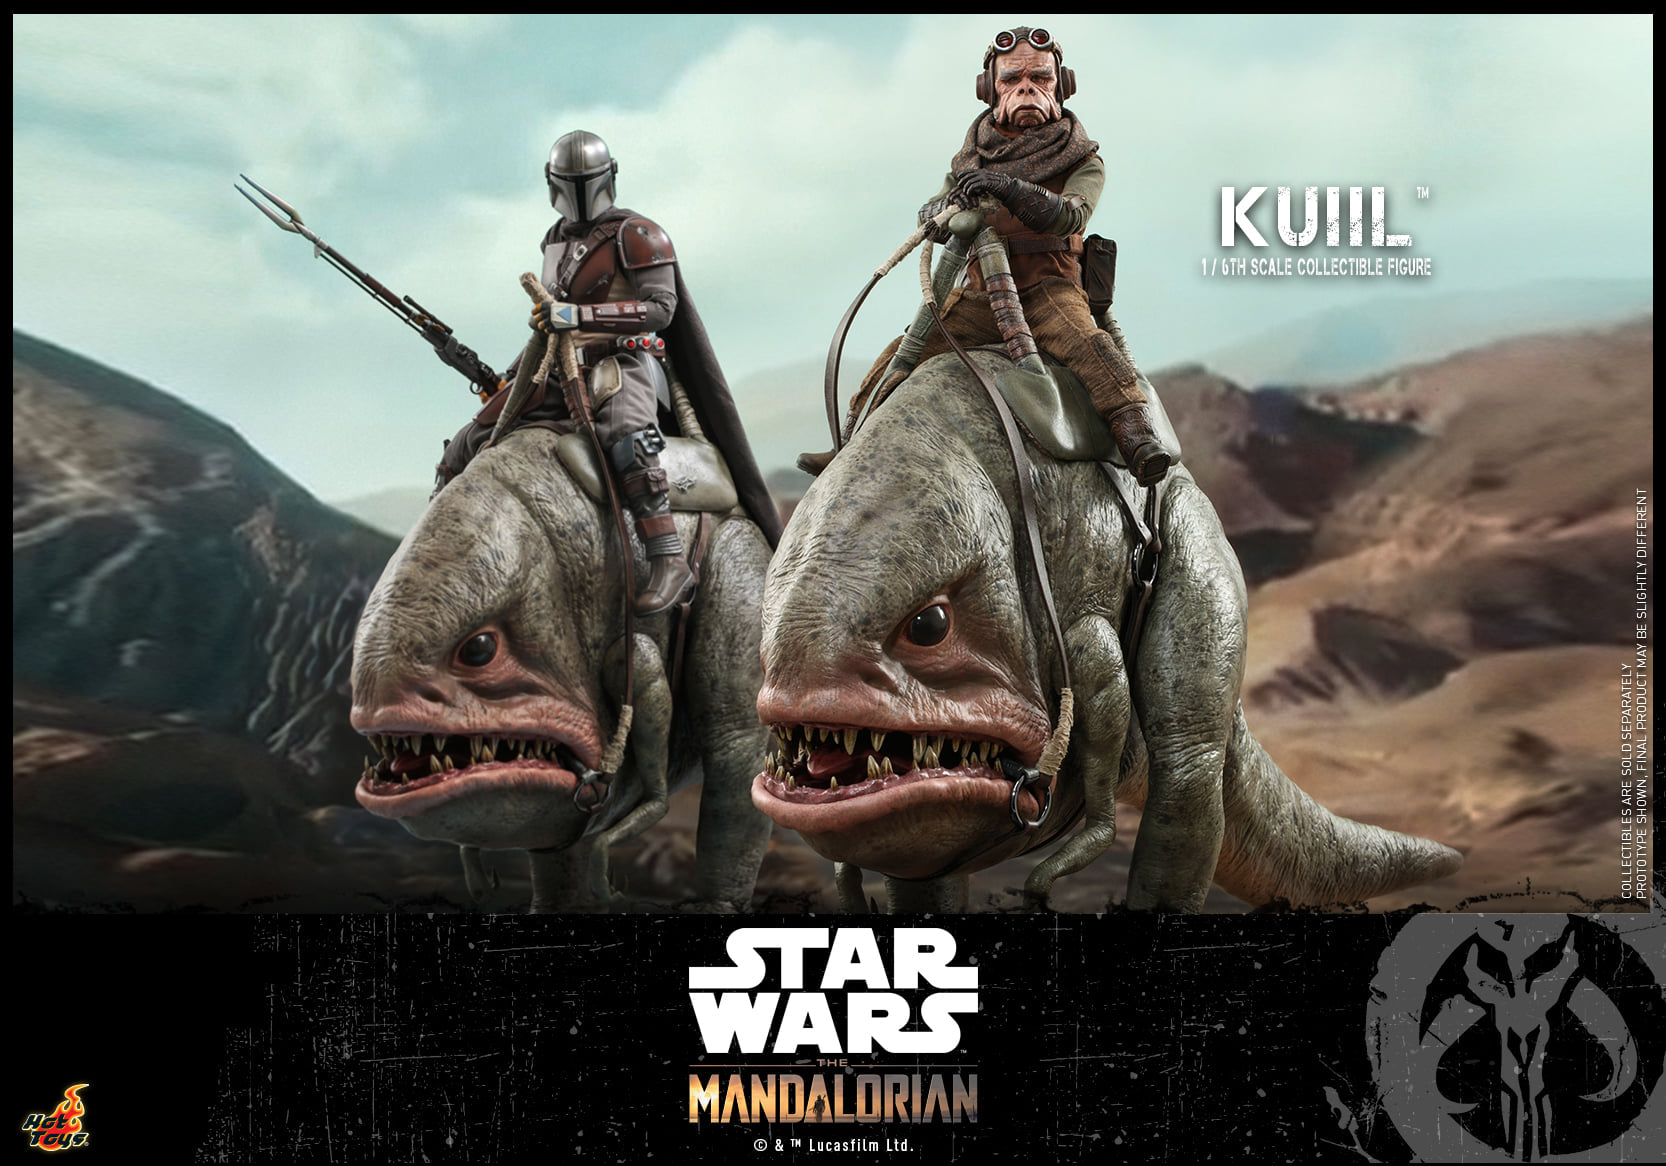 Hot Toys - TMS048 - Star Wars: The Mandalorian - Kuiil - Marvelous Toys